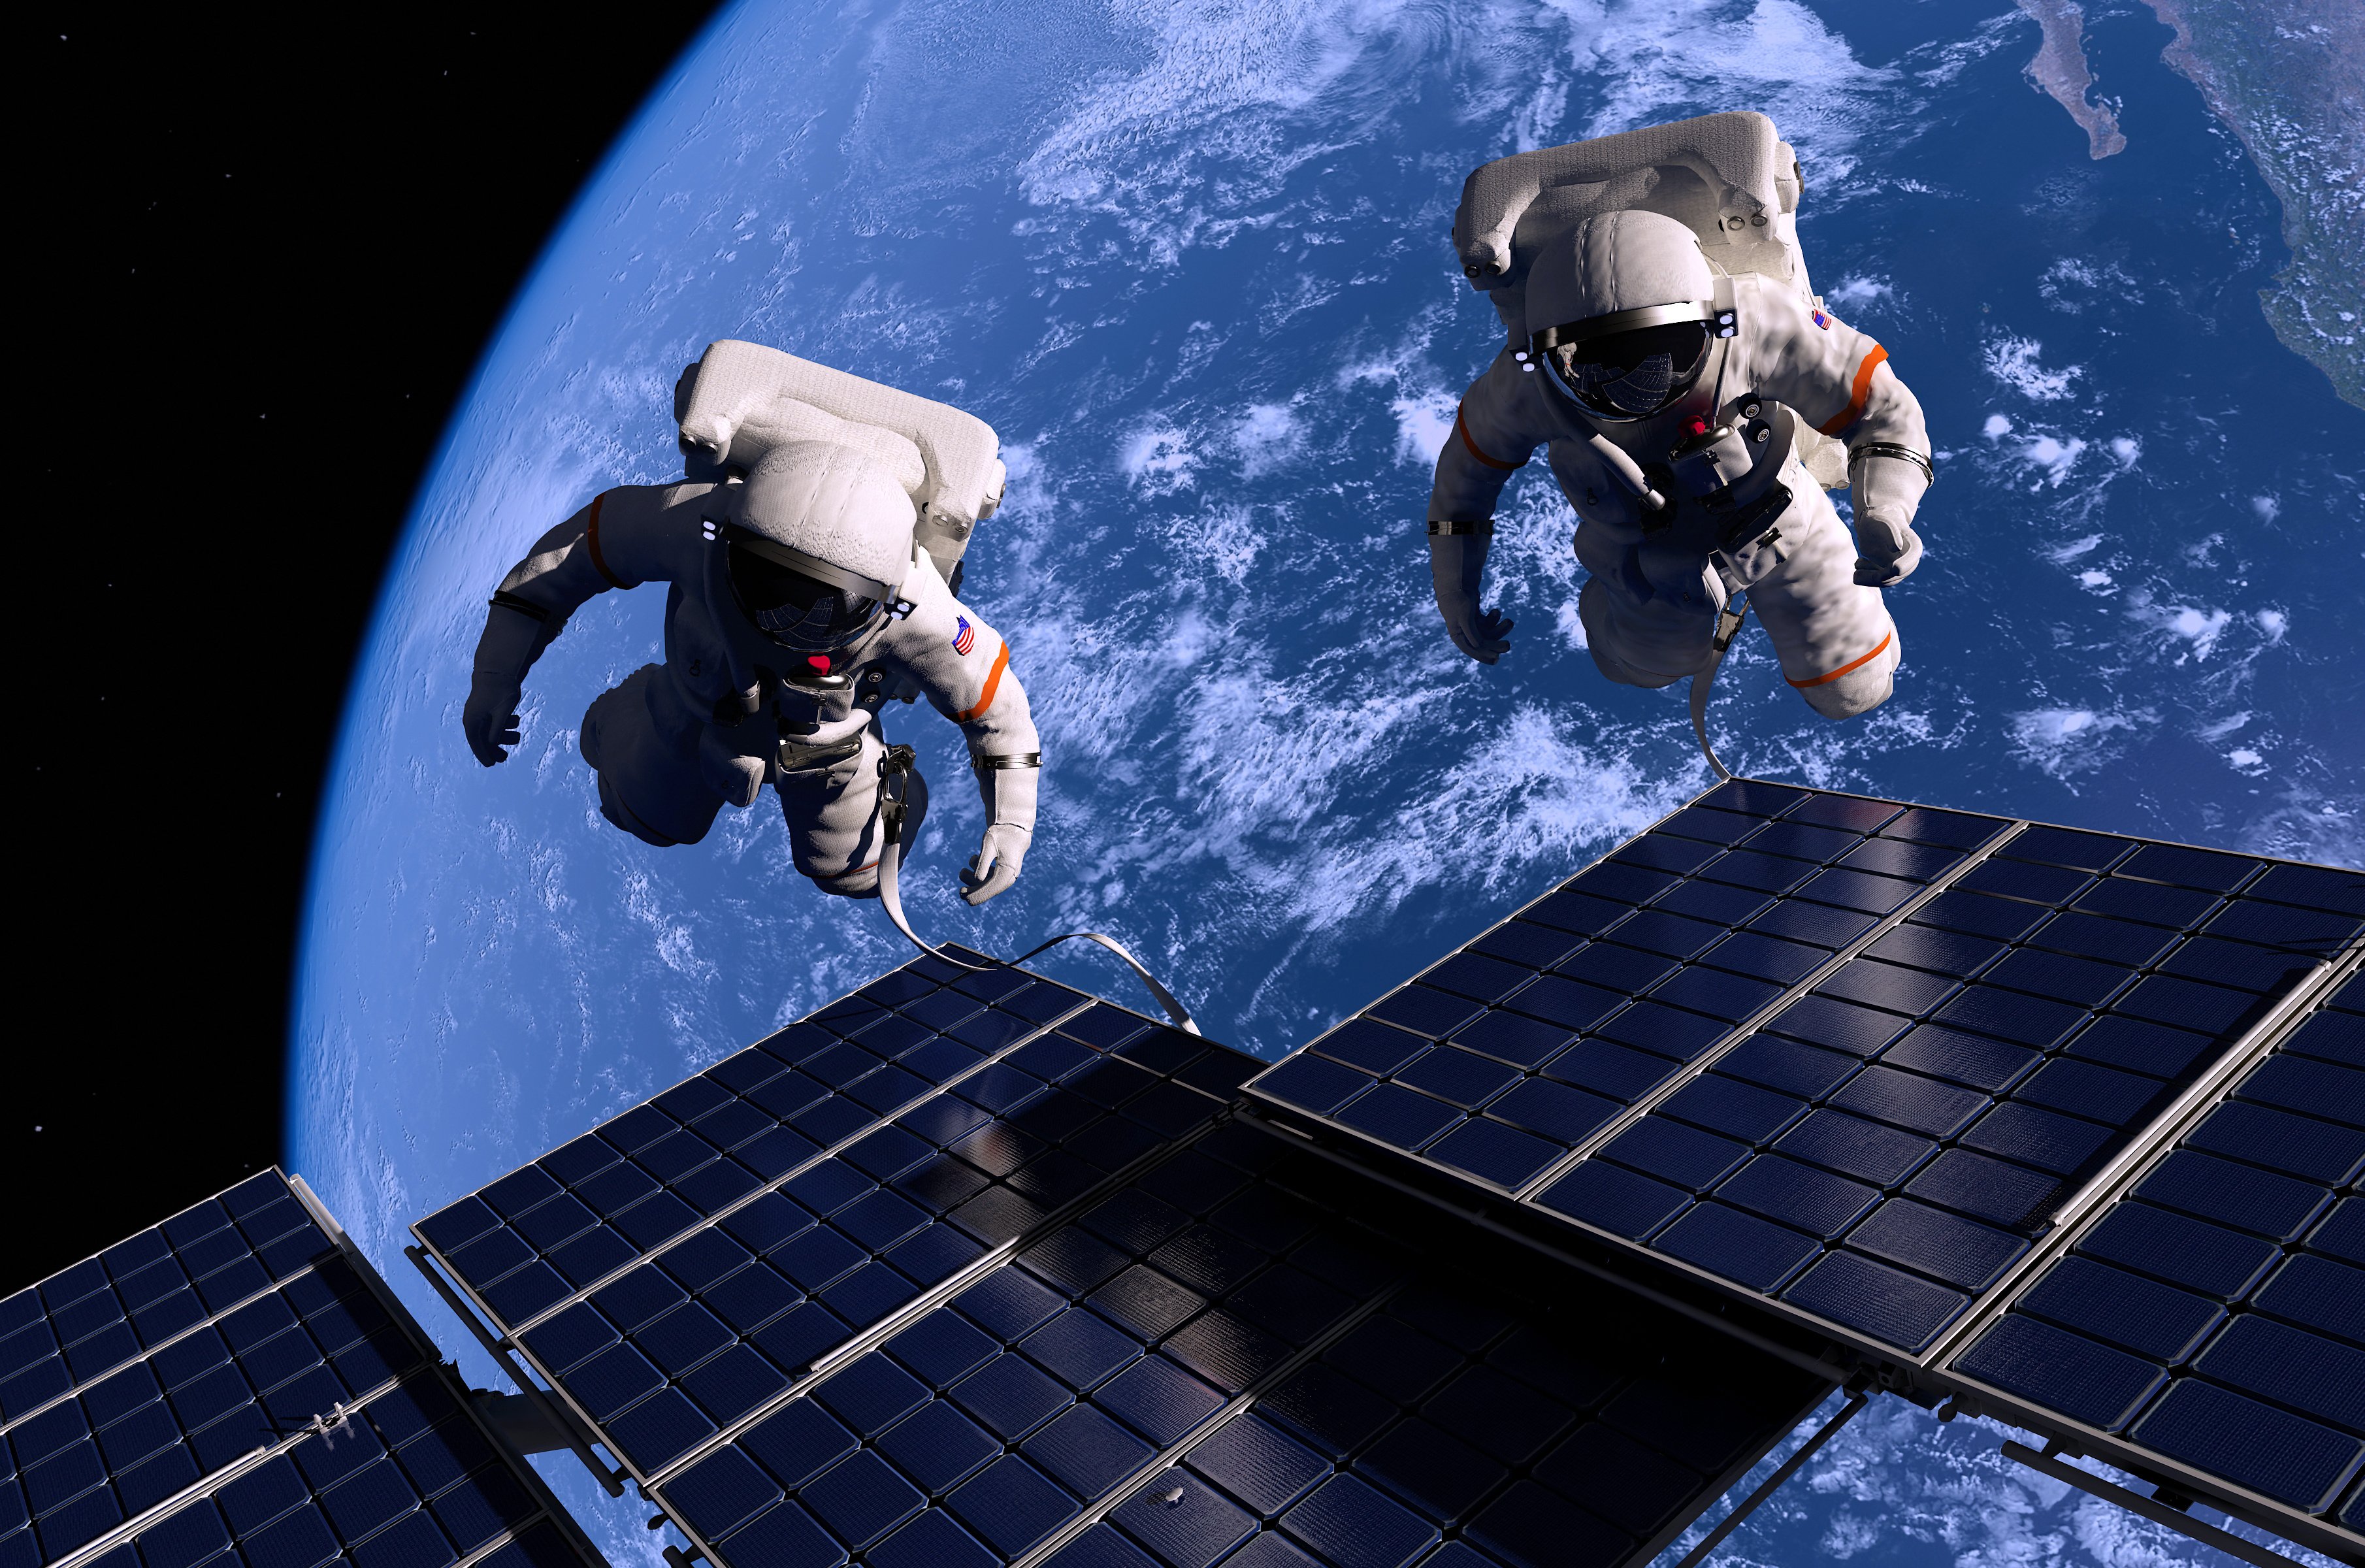 Второй человек орбитальный полет. Космонавты в невесомости на МКС. Современная космонавтика. Космонавт в открытом космосе. Человек в космосе.